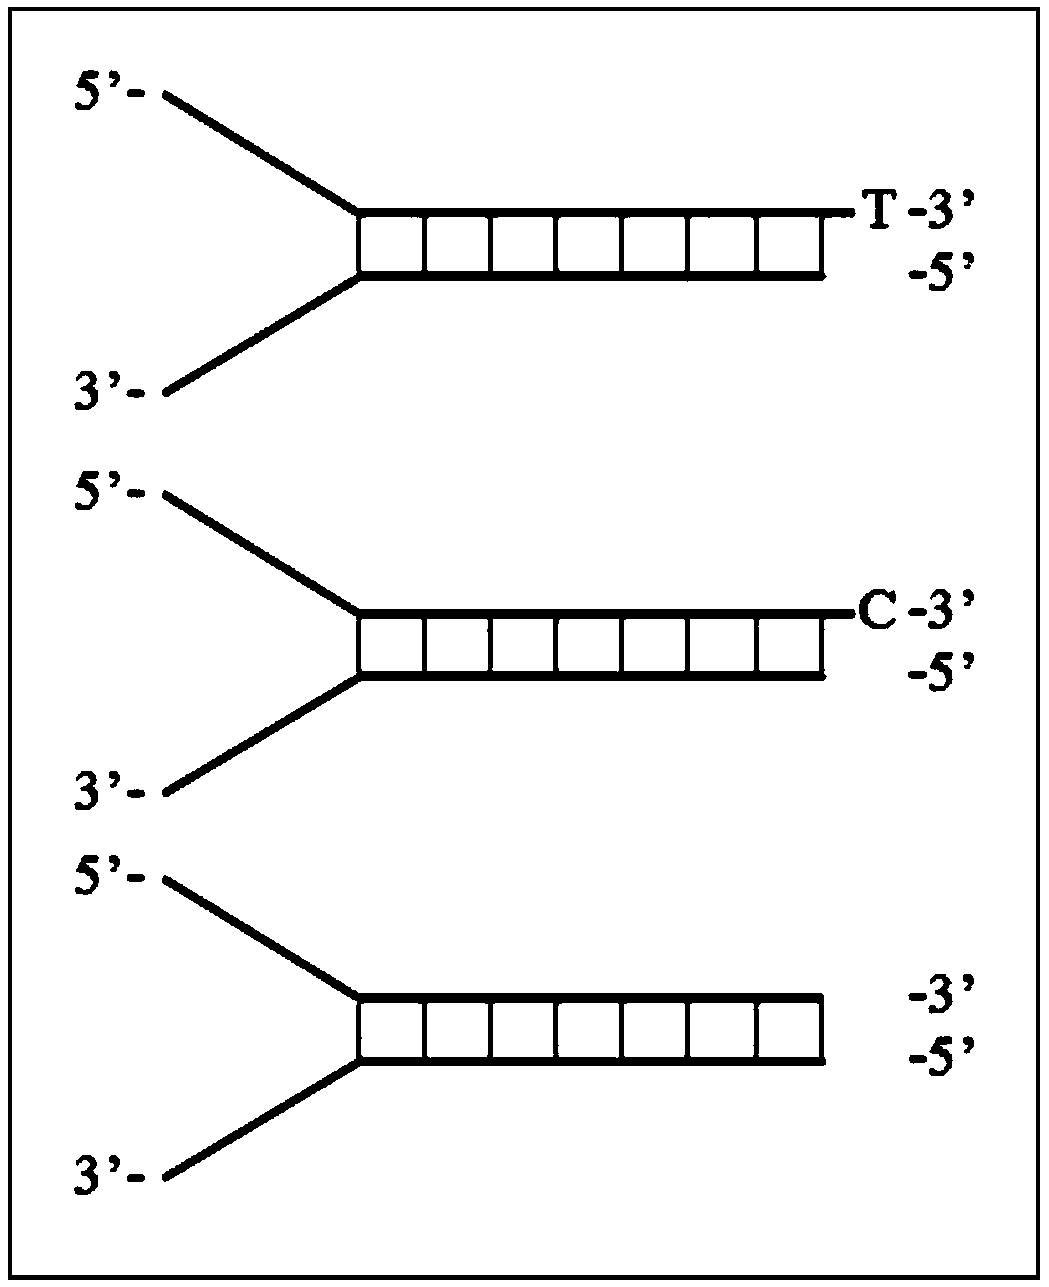 An Efficient Method for DNA Adapter Ligation